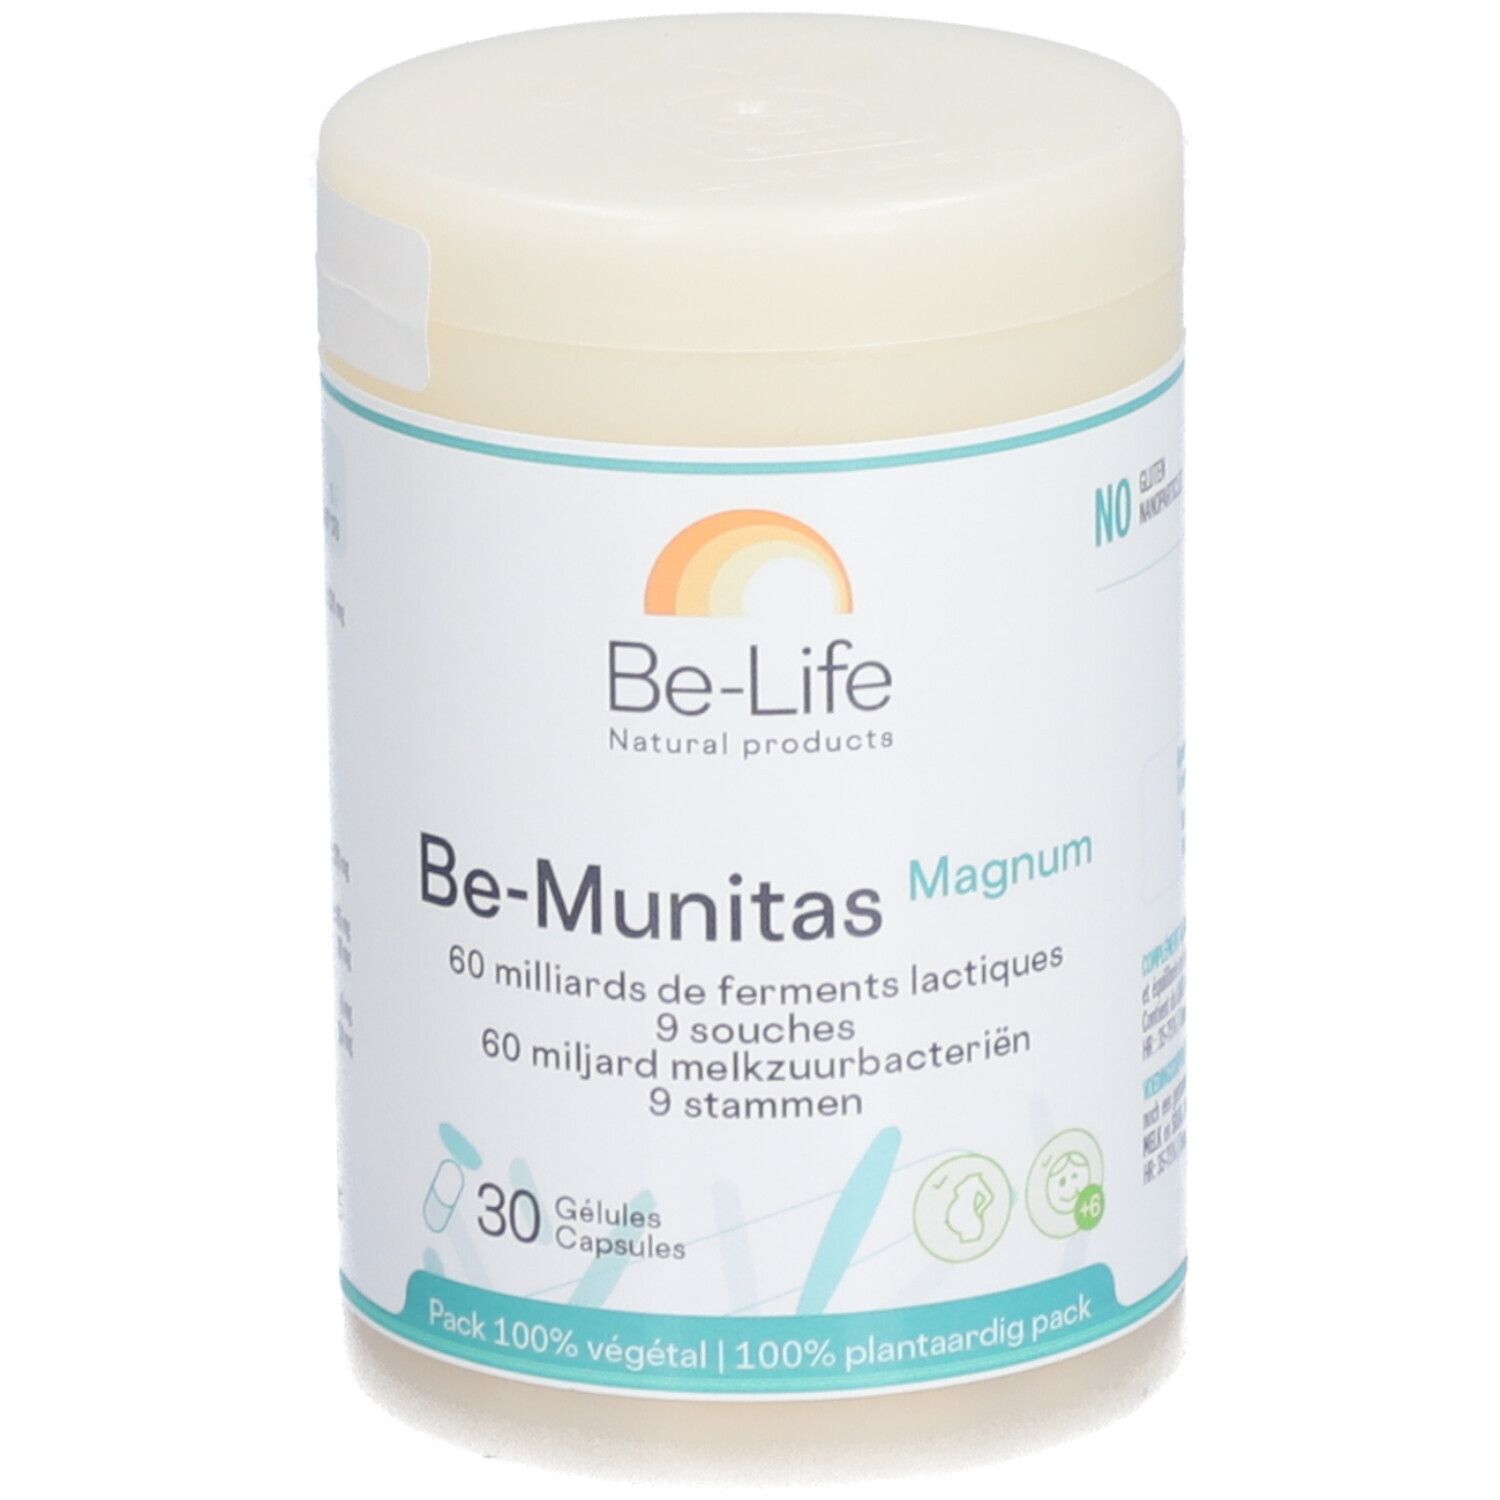 Be-Life Be-Munitas Magnum